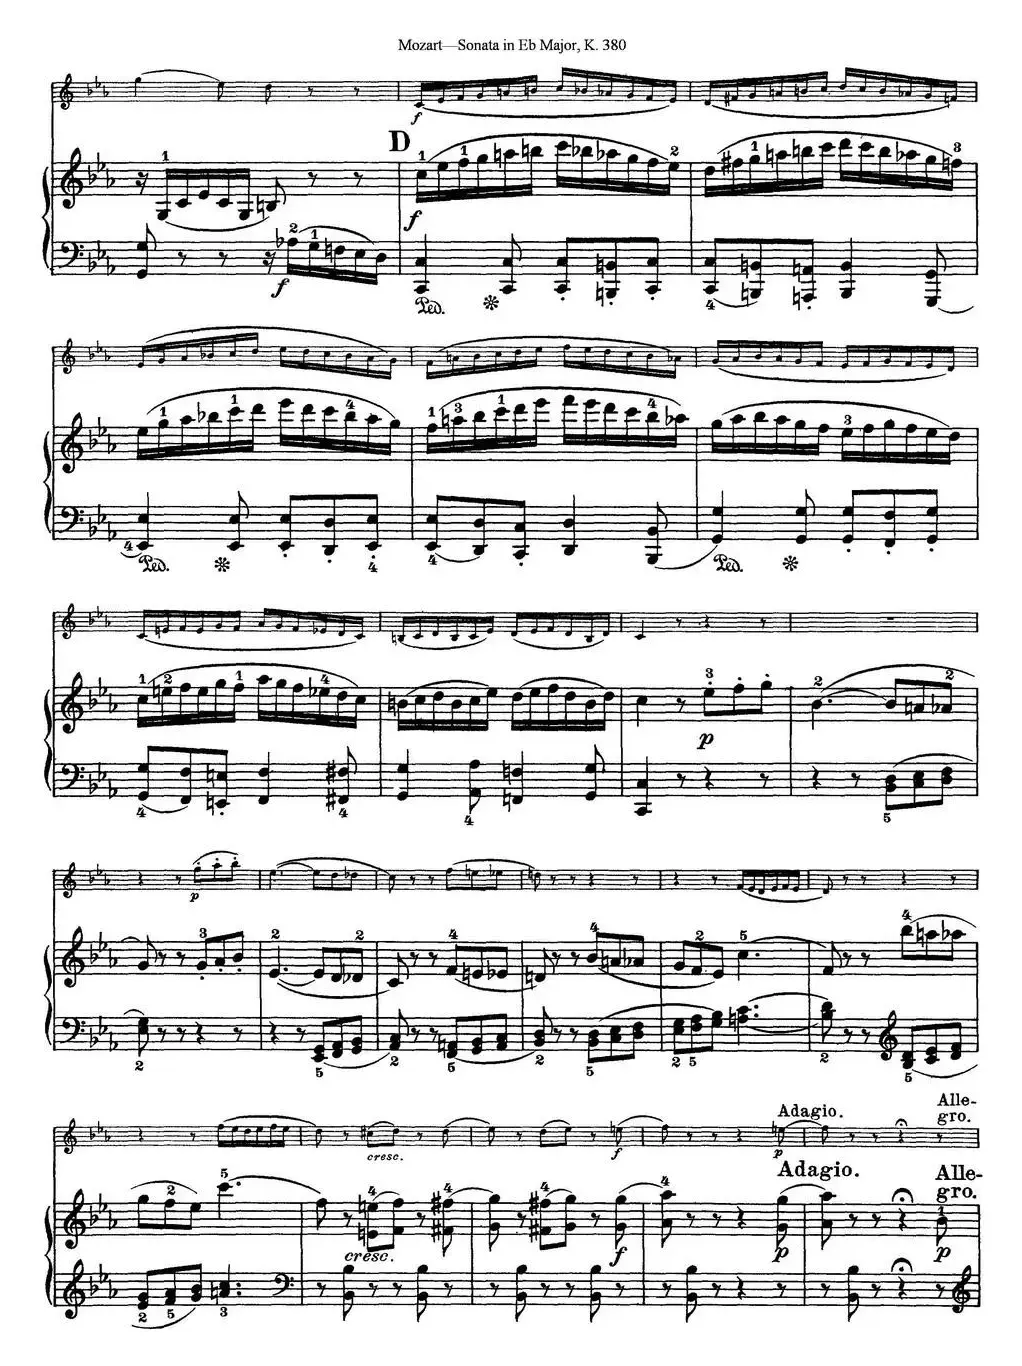 Violin Sonata in Eb Major K.380（小提琴+钢琴伴奏）